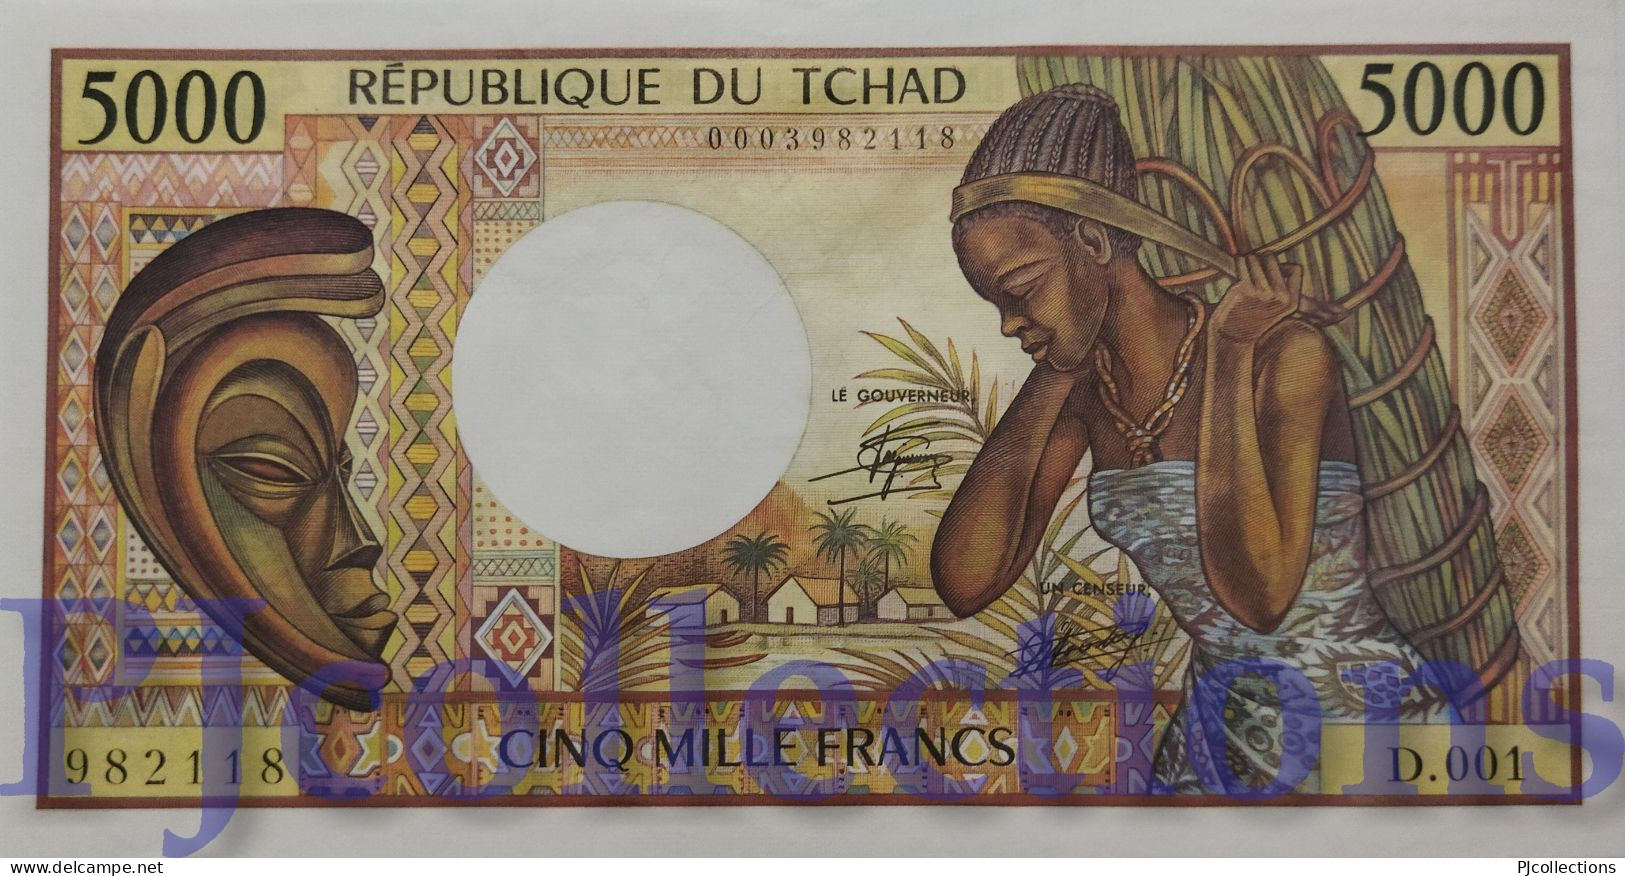 CHAD 5000 FRANCS 1984/85 PICK 11 AUNC - Chad